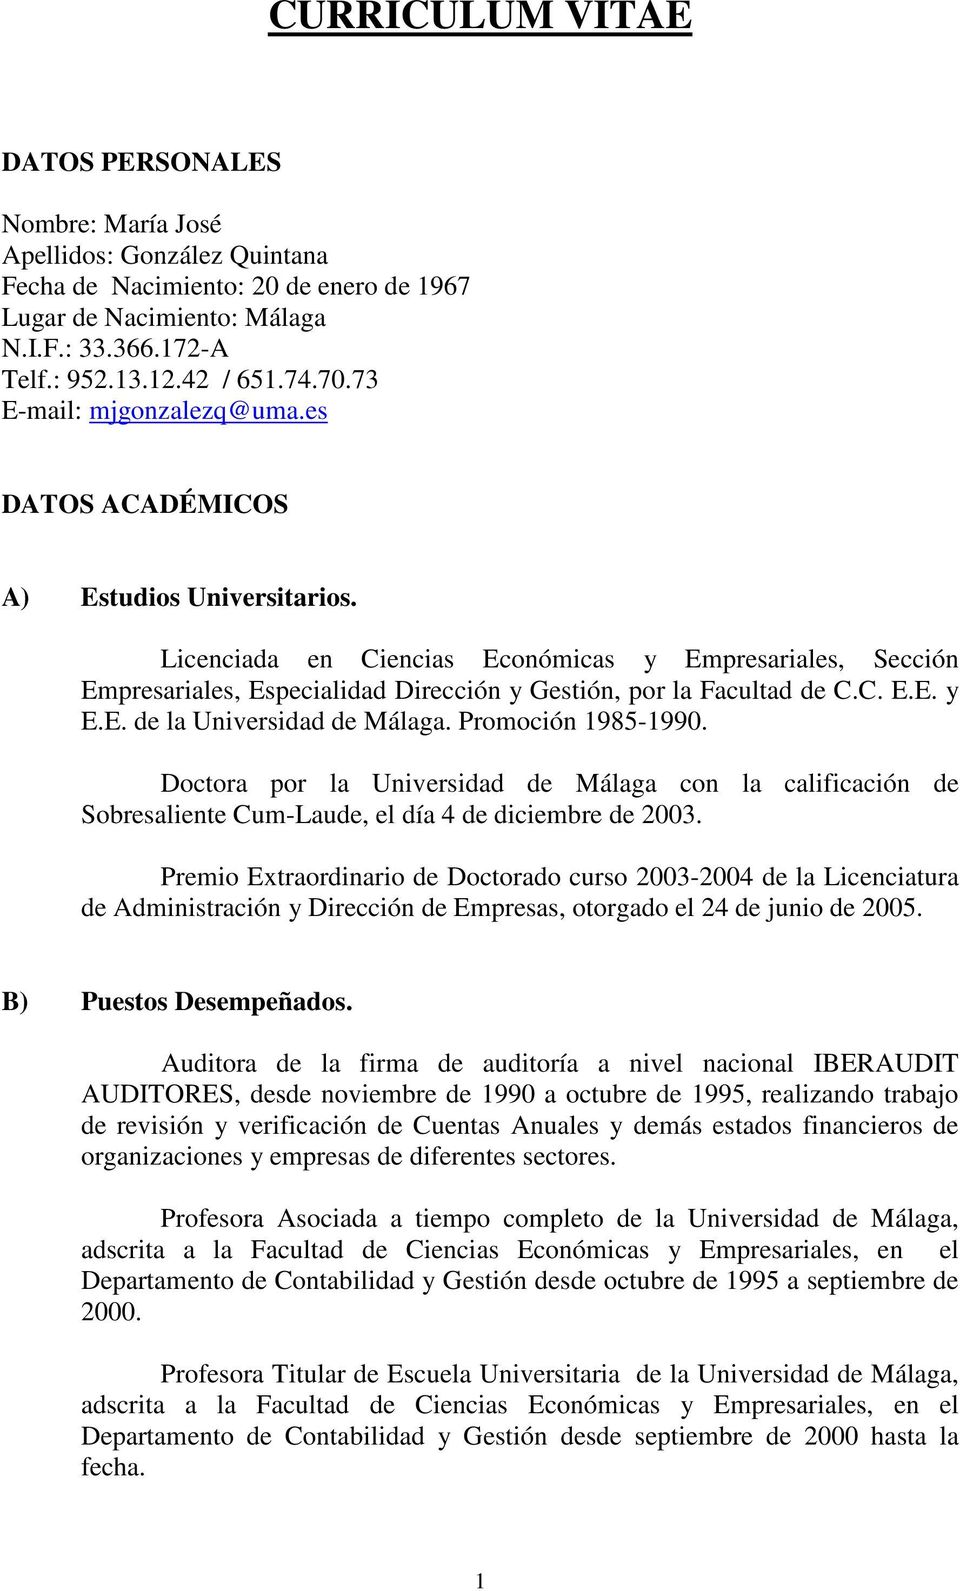 Licenciada en Ciencias Económicas y Empresariales, Sección Empresariales, Especialidad Dirección y Gestión, por la Facultad de C.C. E.E. y E.E. de la Universidad de Málaga. Promoción 1985-1990.